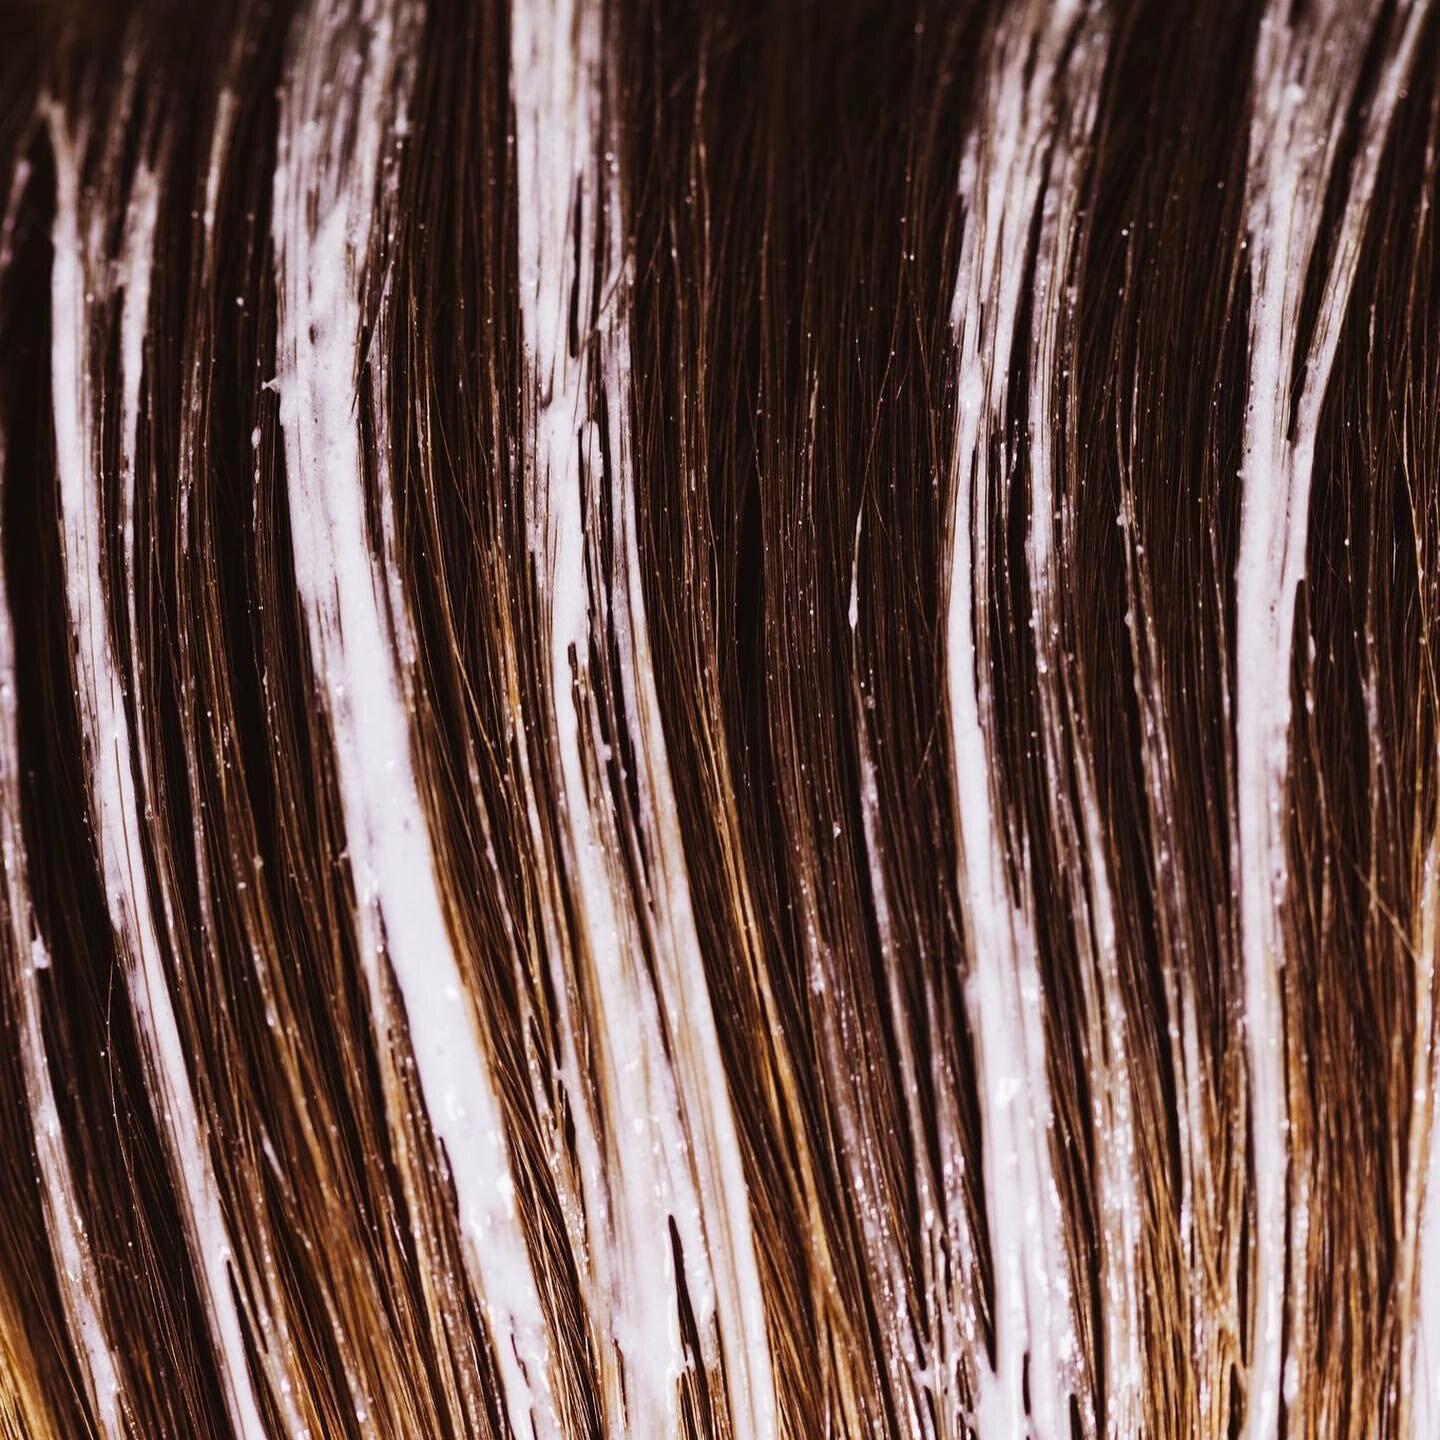 Color Up

Dein Haar wirkt fad und hat allen Schein verloren? Wir beraten dich gerne zum Thema Highlights, Farbe und Str&auml;hnen. Denn mit jeder kleinen Ver&auml;nderung, kommt meinst etwas Sch&ouml;nes um die Ecke. Was soll es bei dir sein?

#doubl